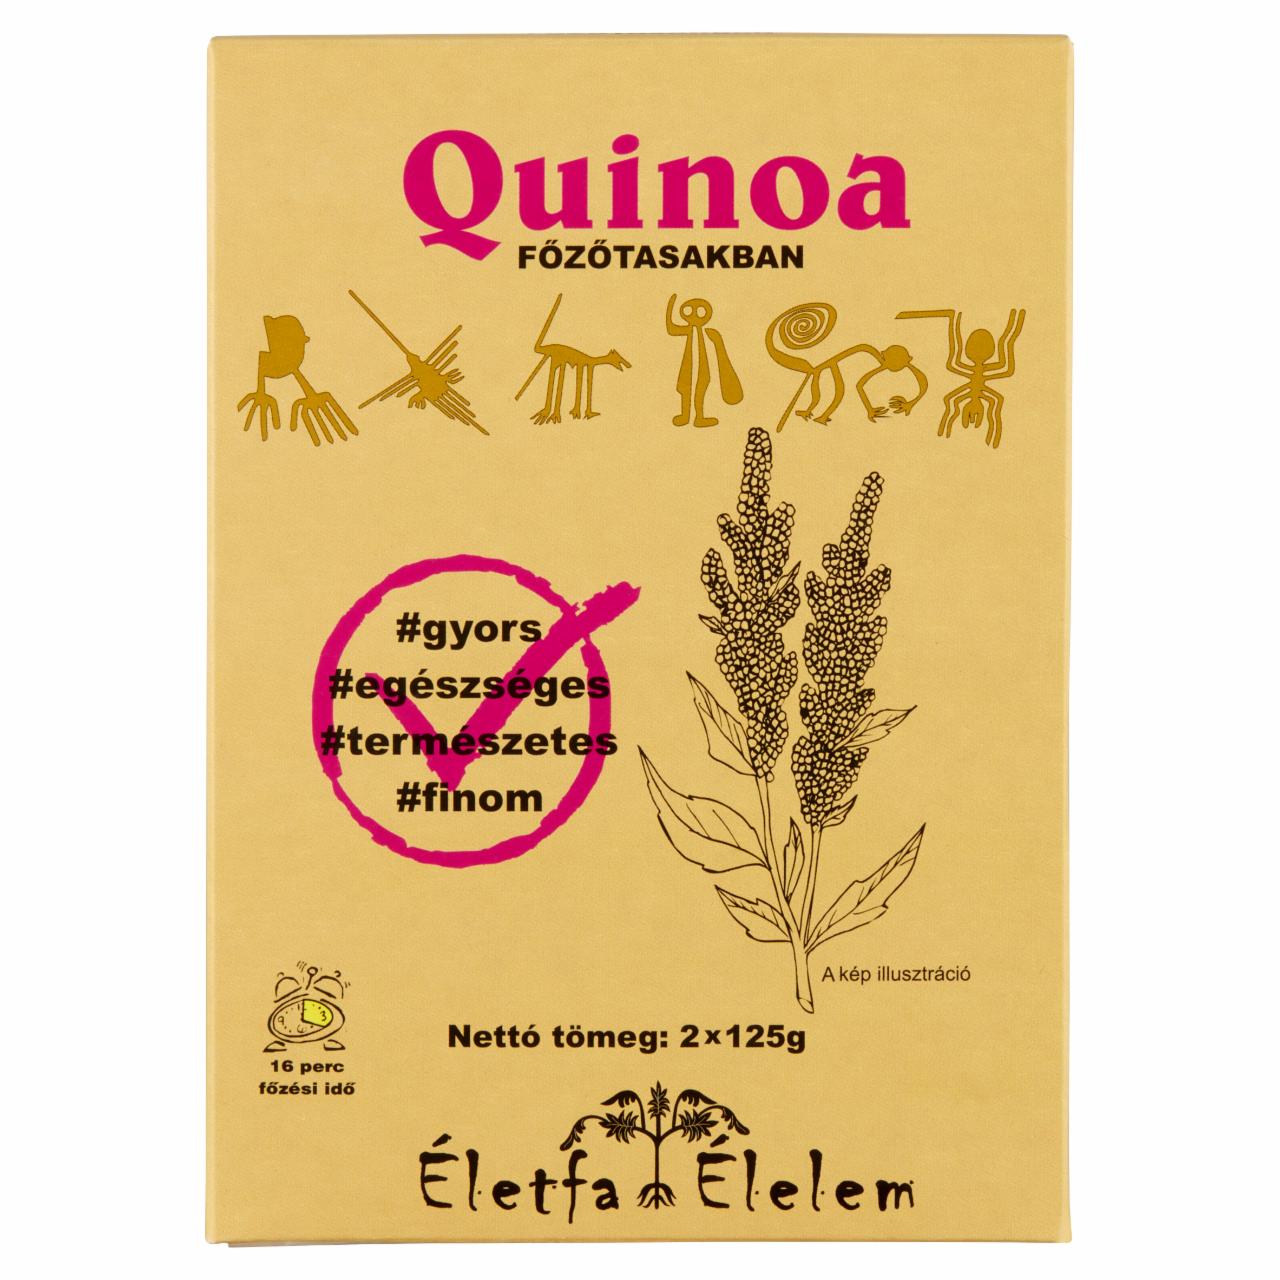 Képek - Életfa Élelem quinoa főzőtasakban 2 x 125 g